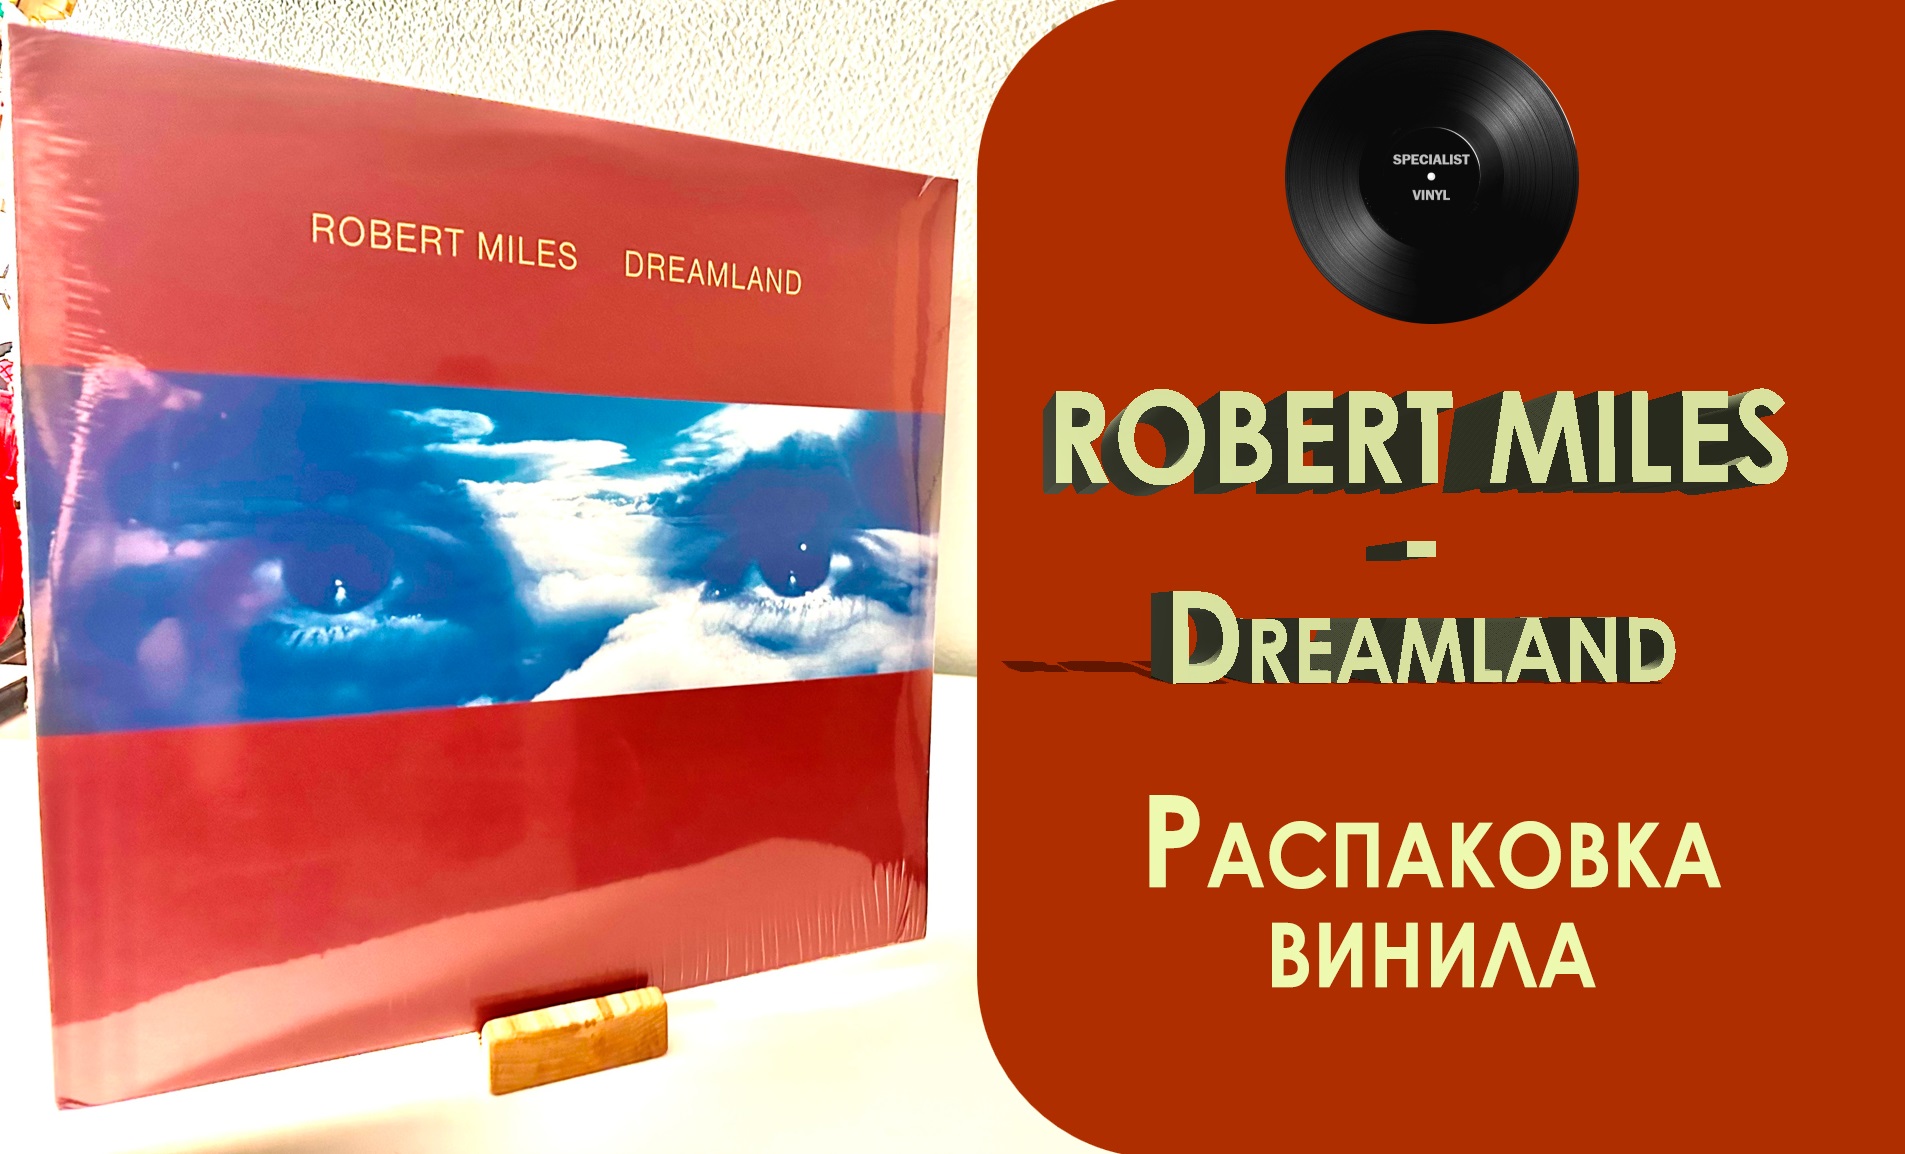 Robert miles dreamland. Robert Miles "Dreamland (CD)". Robert Miles - Dreamland аудиокассета. Robert Miles - Dreamland обложка кассеты.